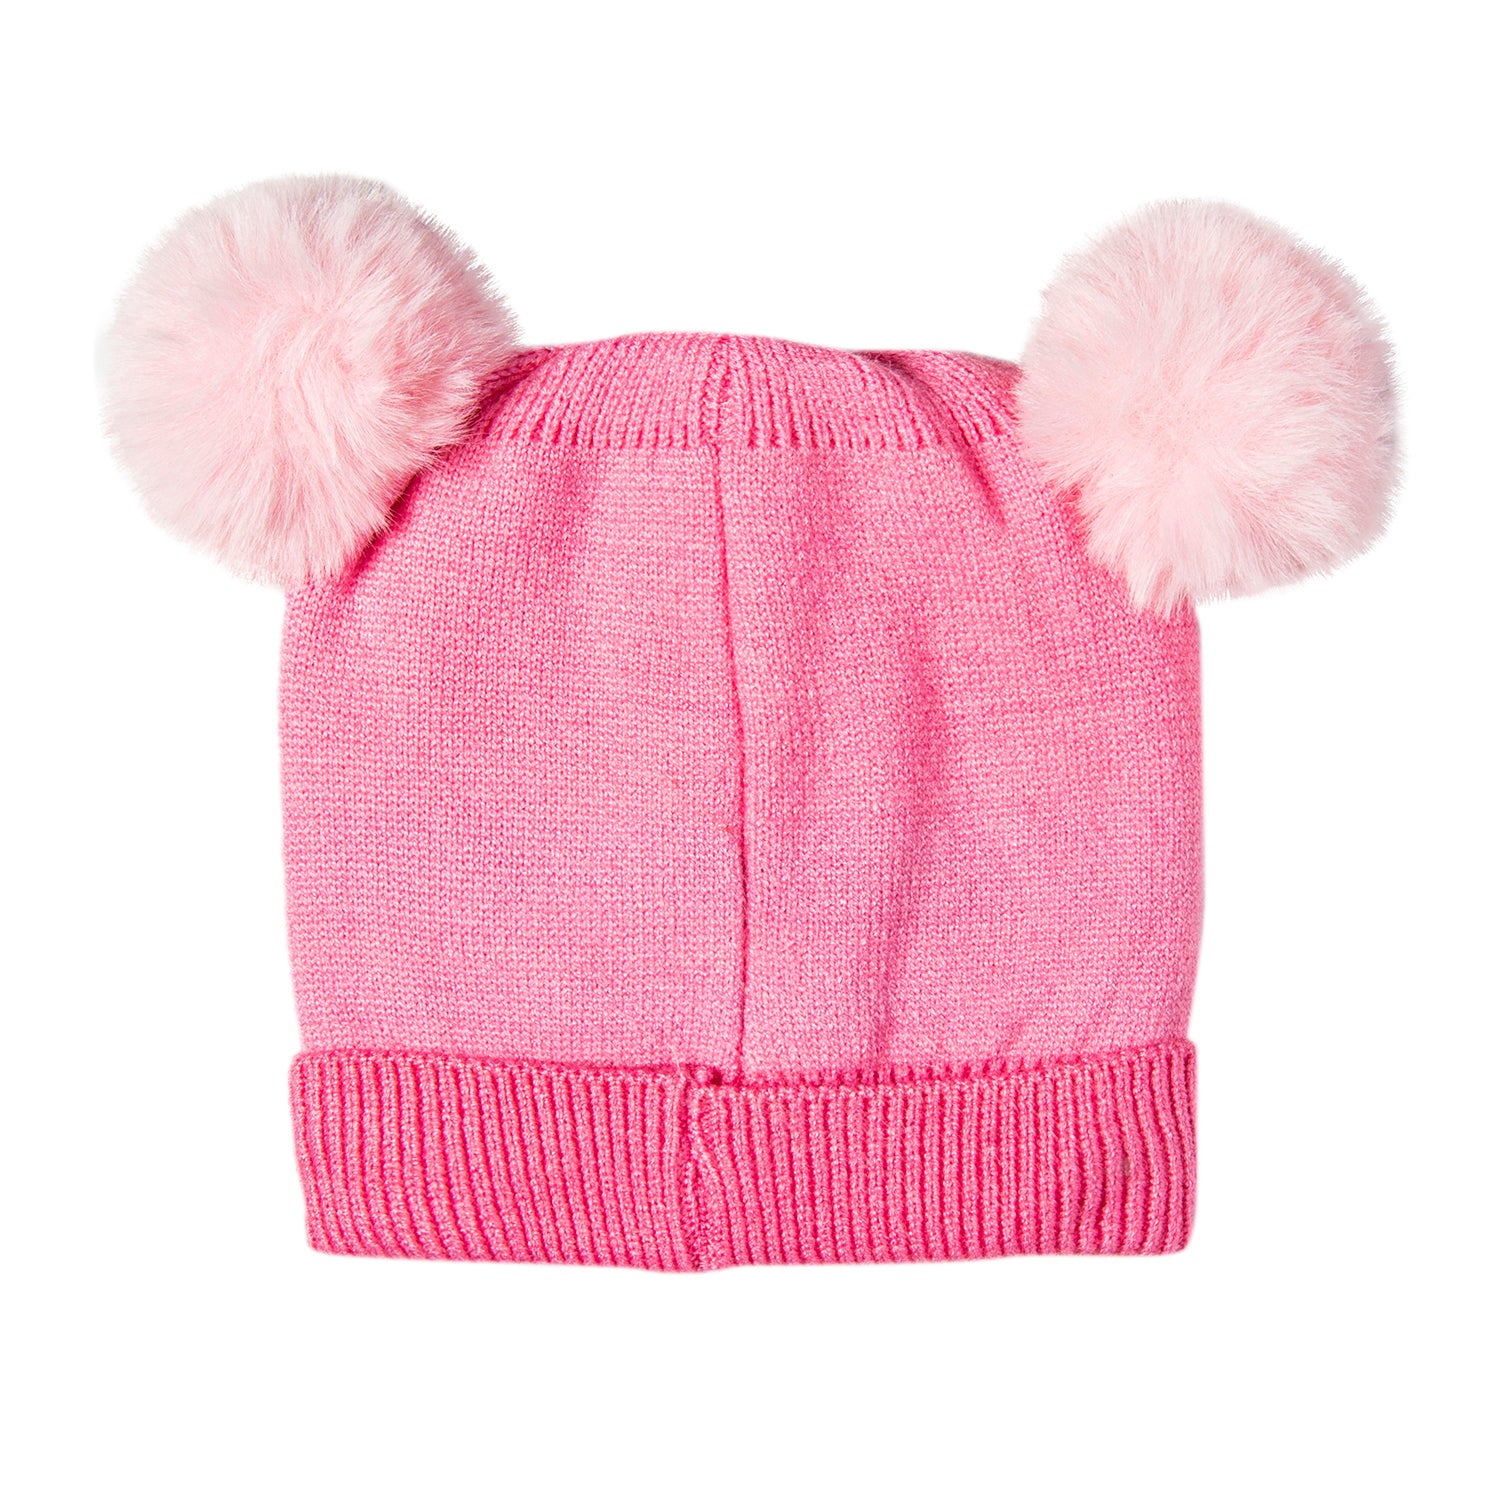 Knit Woollen Cap Pom Pom Bear Pink - Baby Moo